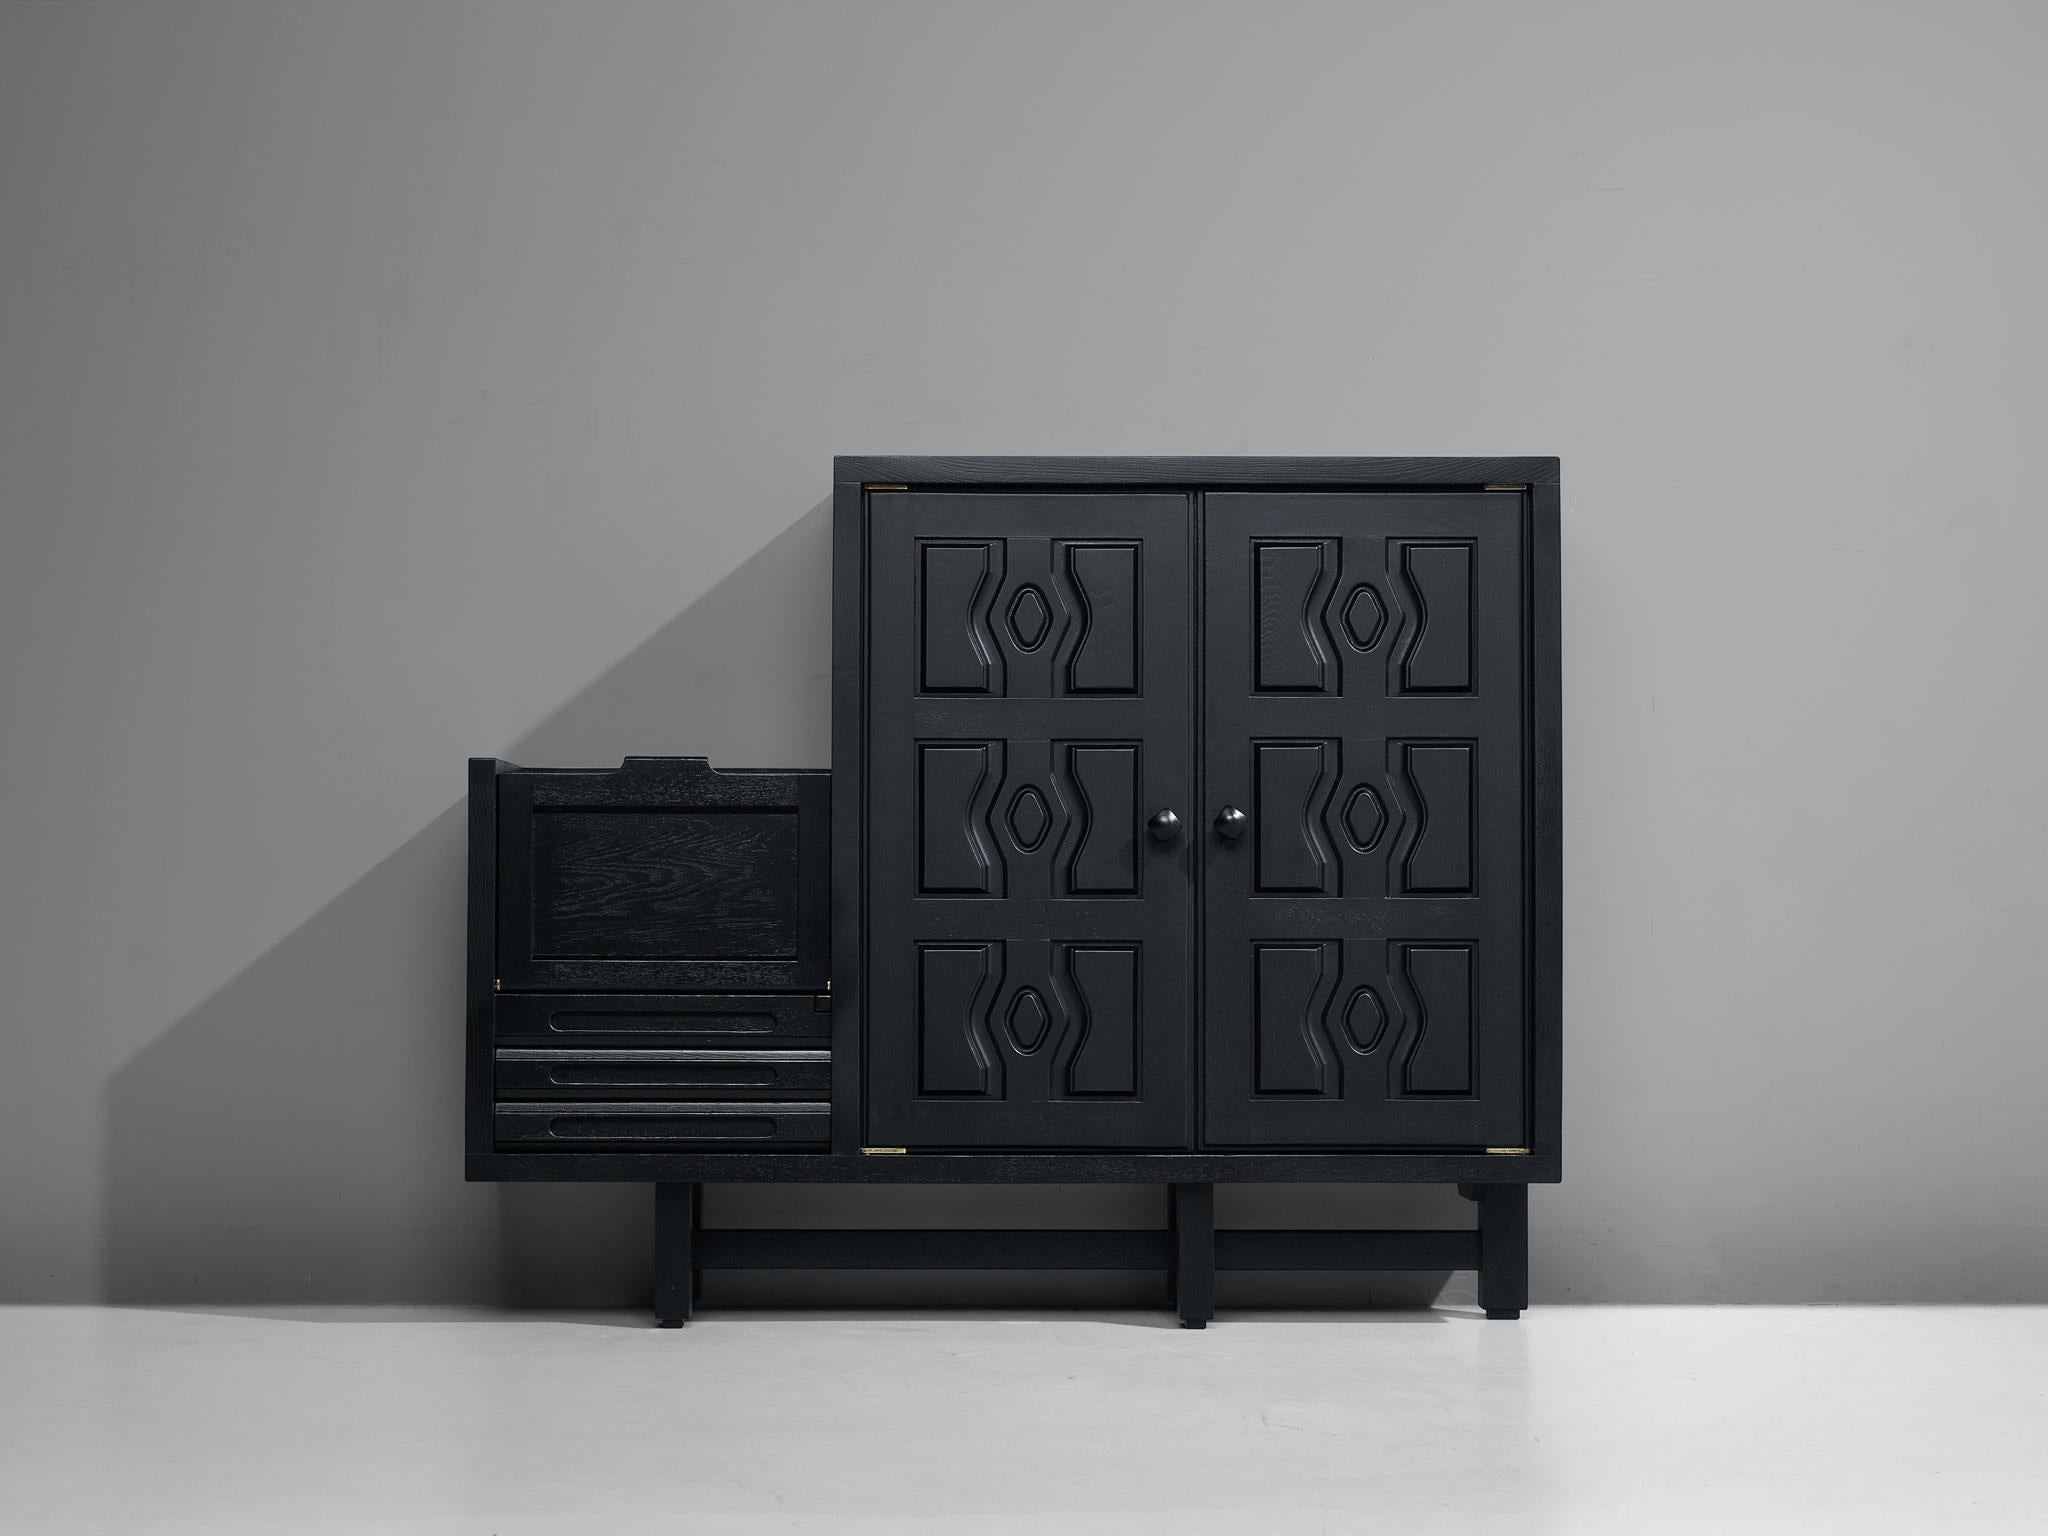 Guillerme & Chambron, armoire, modèle 'Thierry', chêne, France, années 1960.

Ce buffet espiègle reflète la période néo-gothique européenne du dix-neuvième siècle grâce à son bois lourd teinté en noir. Le design s'intègre parfaitement à tout type